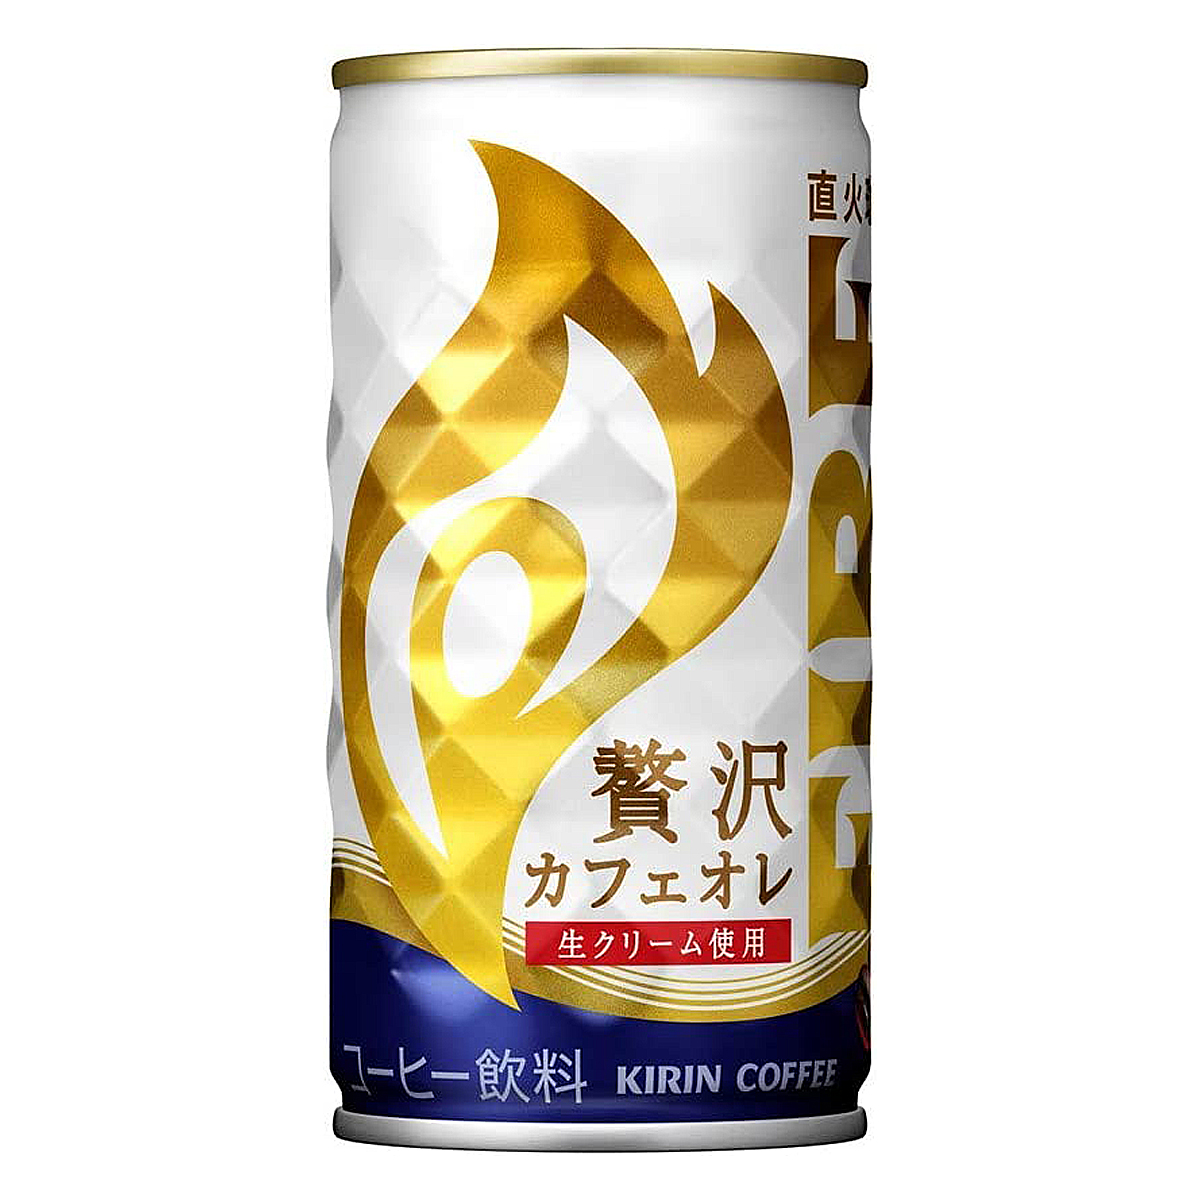 【1ケース】 キリン ファイア 贅沢カフェオレ 185g 缶 飲料 飲み物 ソフトドリンク 30本×1ケース 買いまわり ポイント消化飲料 ドリンク